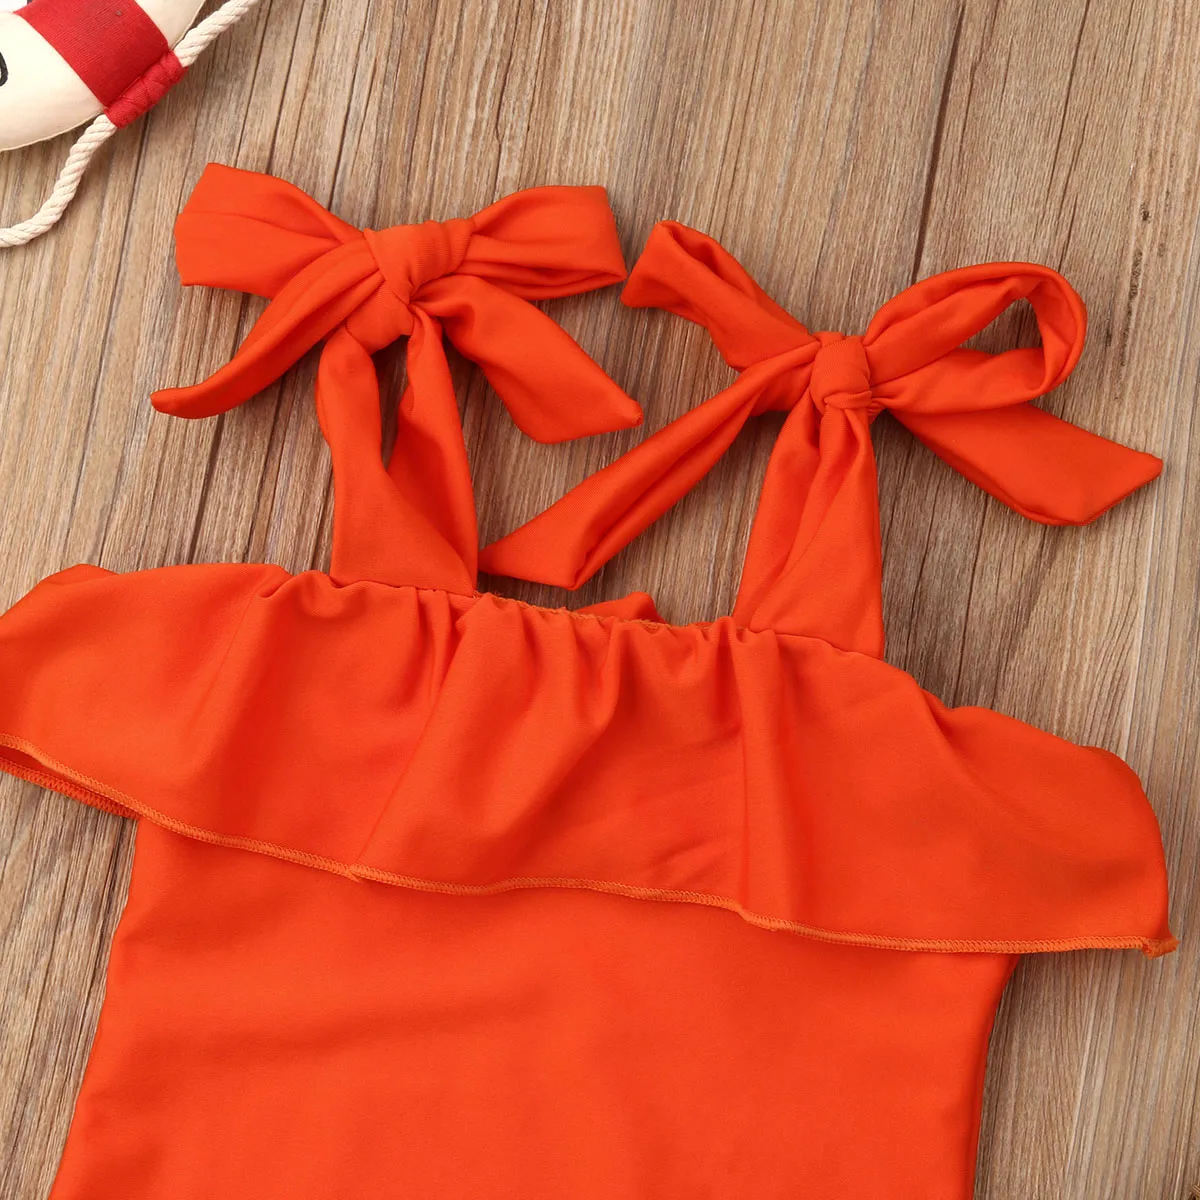 Купальный костюм для девочек; Новинка г.; летний цельный купальный костюм для детей ясельного возраста; Однотонный красный купальный костюм; одежда для маленьких девочек; пляжный купальный костюм